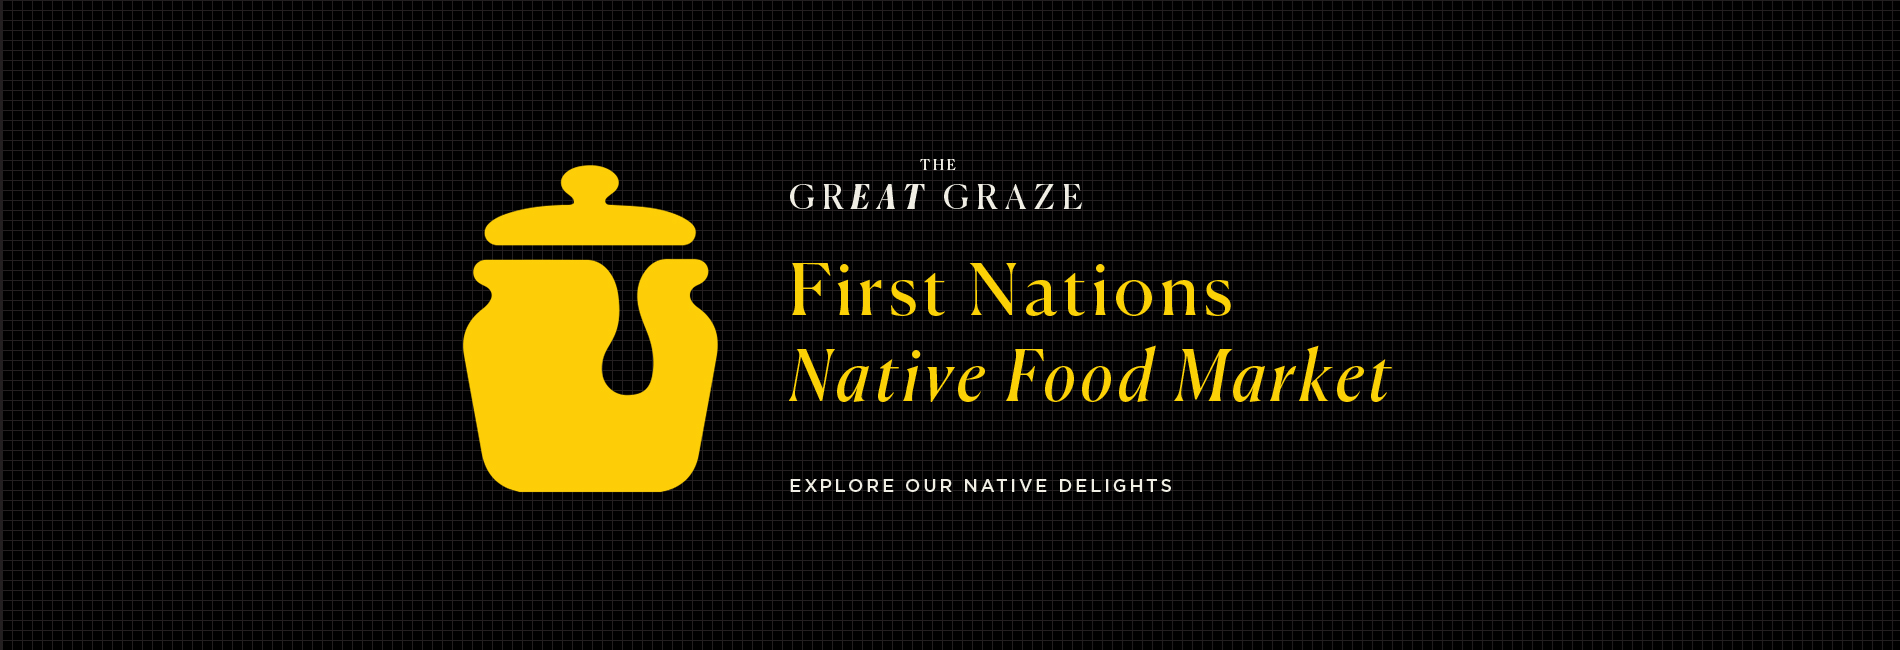 GreatGraze-FirstNationsMarket-banner-1900-x-650.jpg